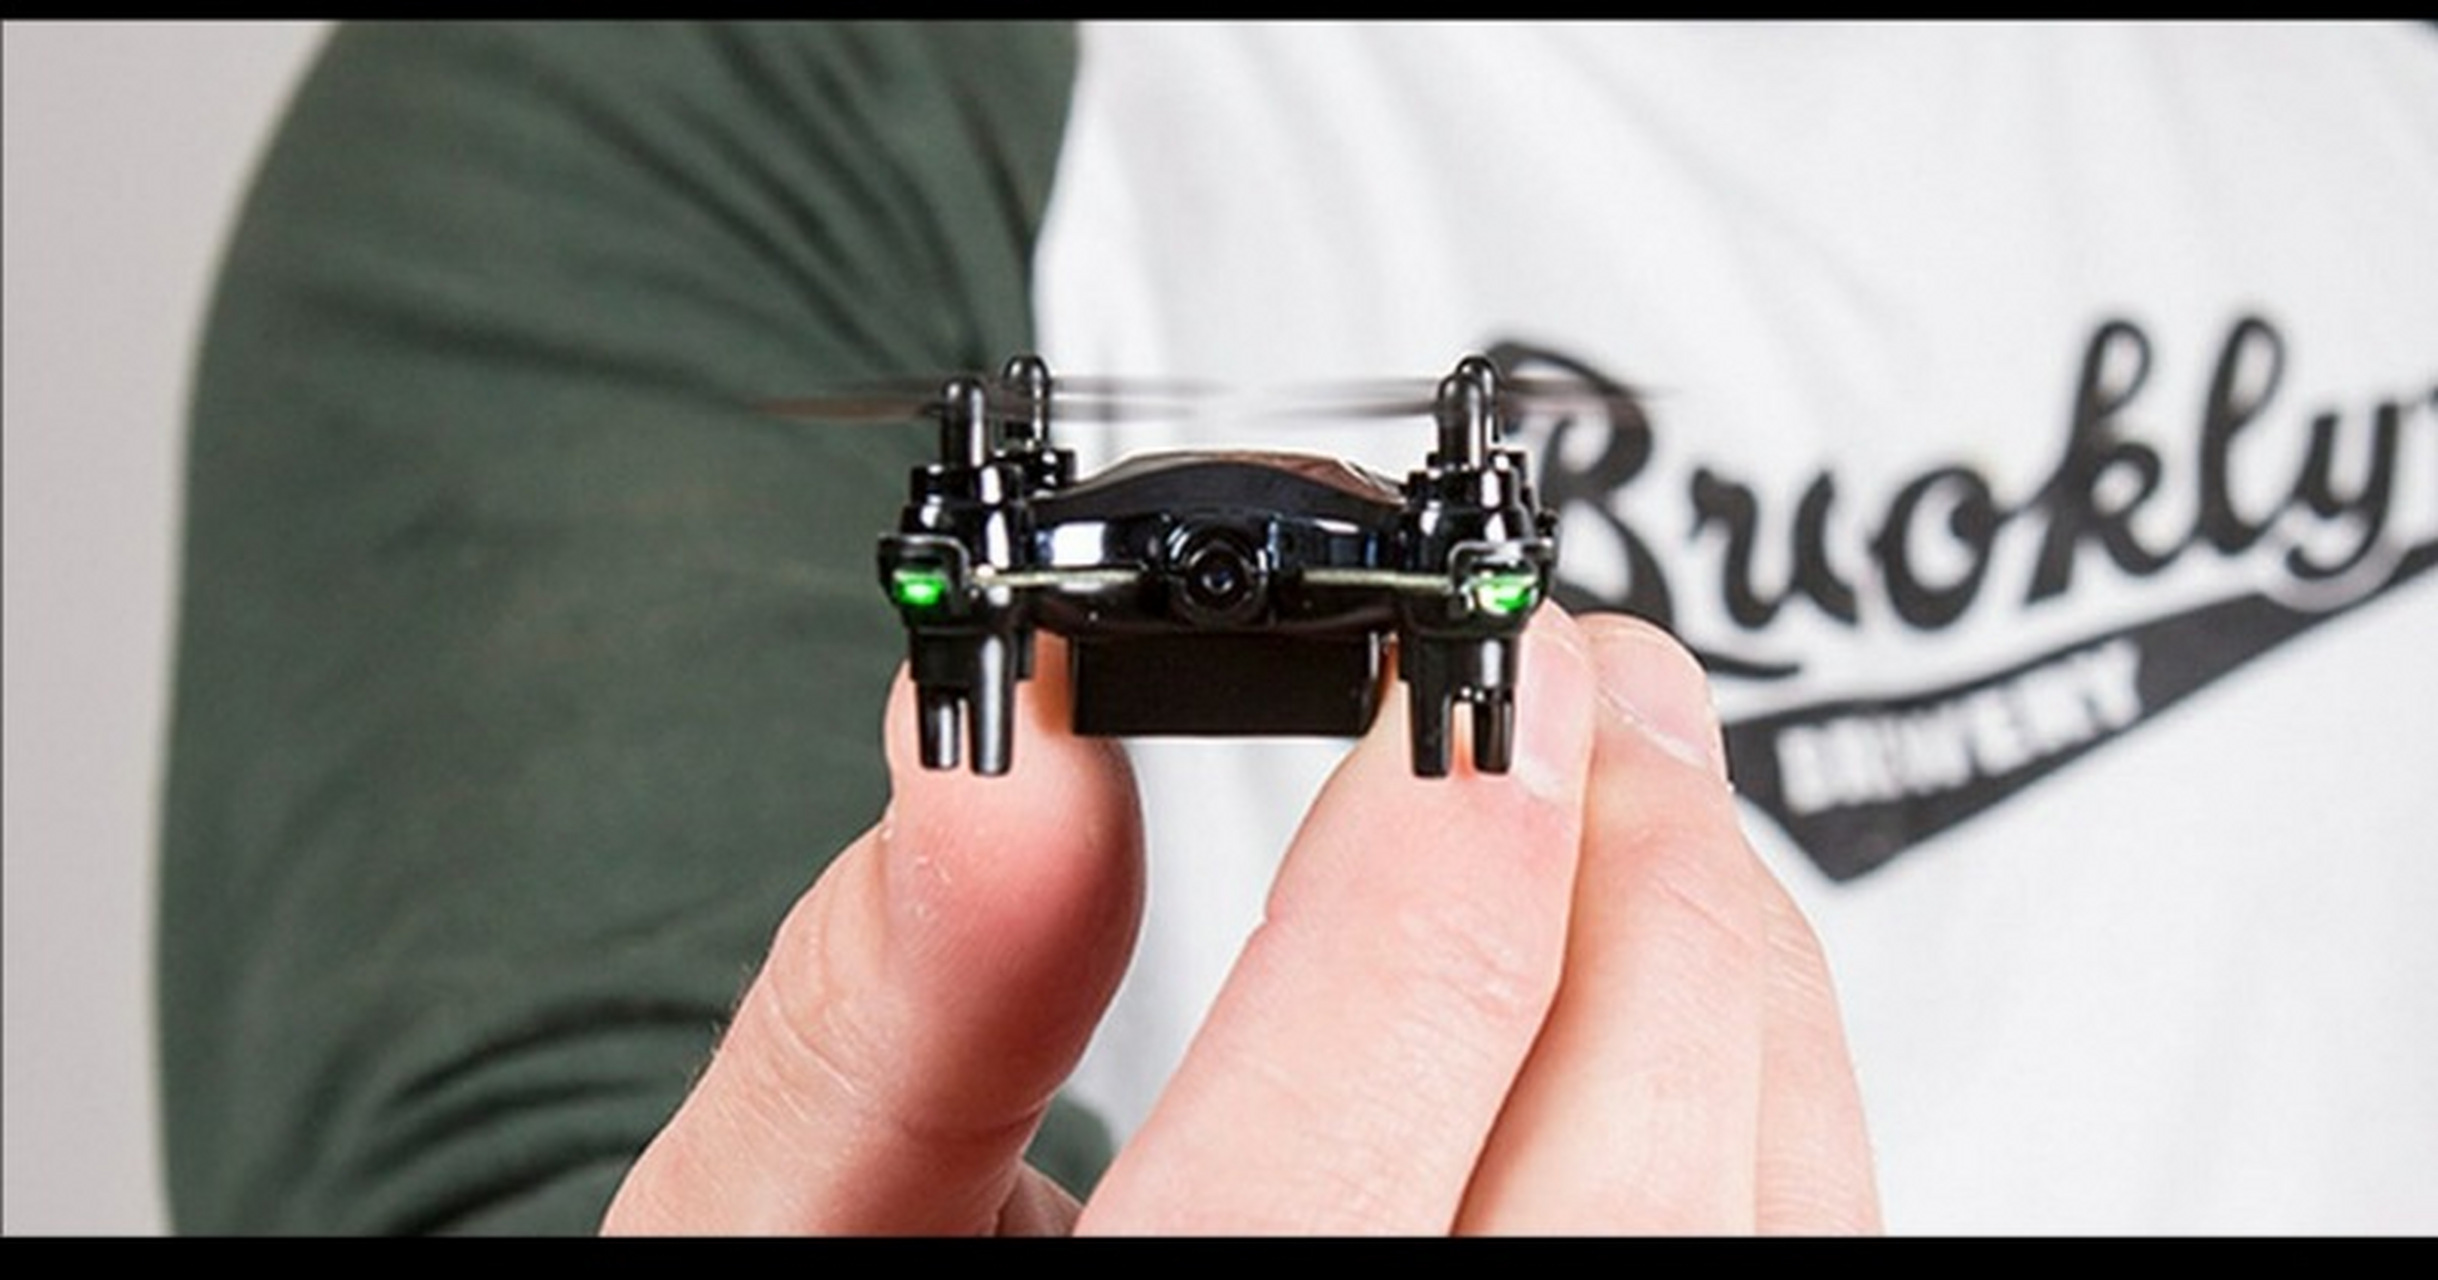 蜂鸟军用小型无人机图片